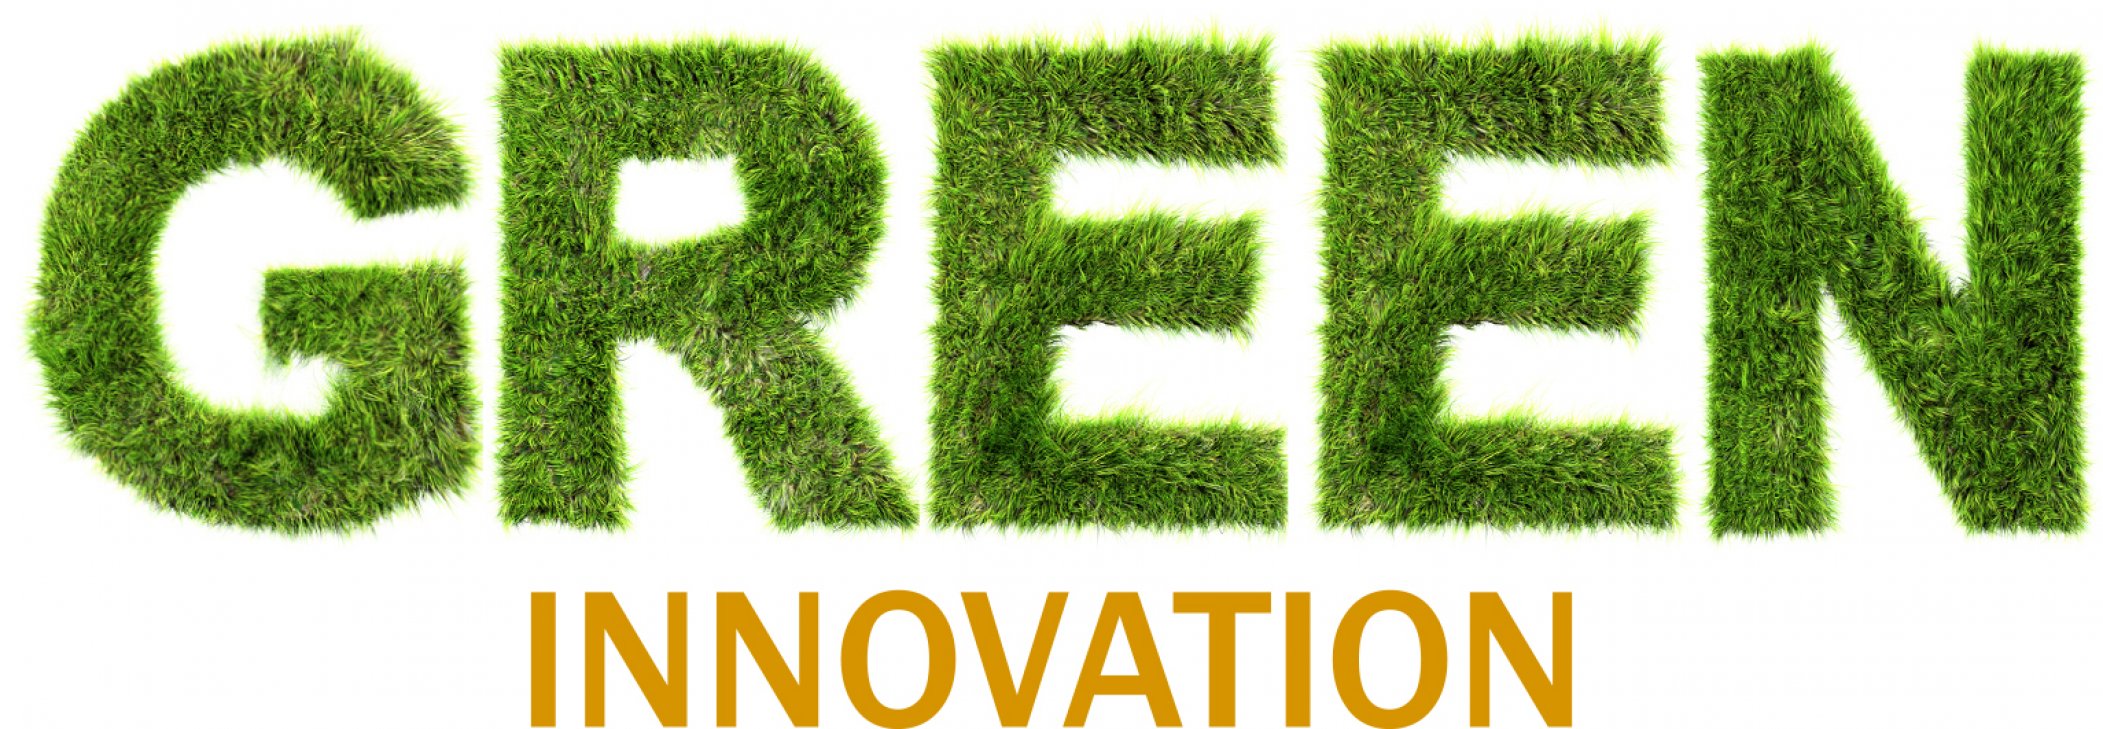 TVE - Logo green innovation